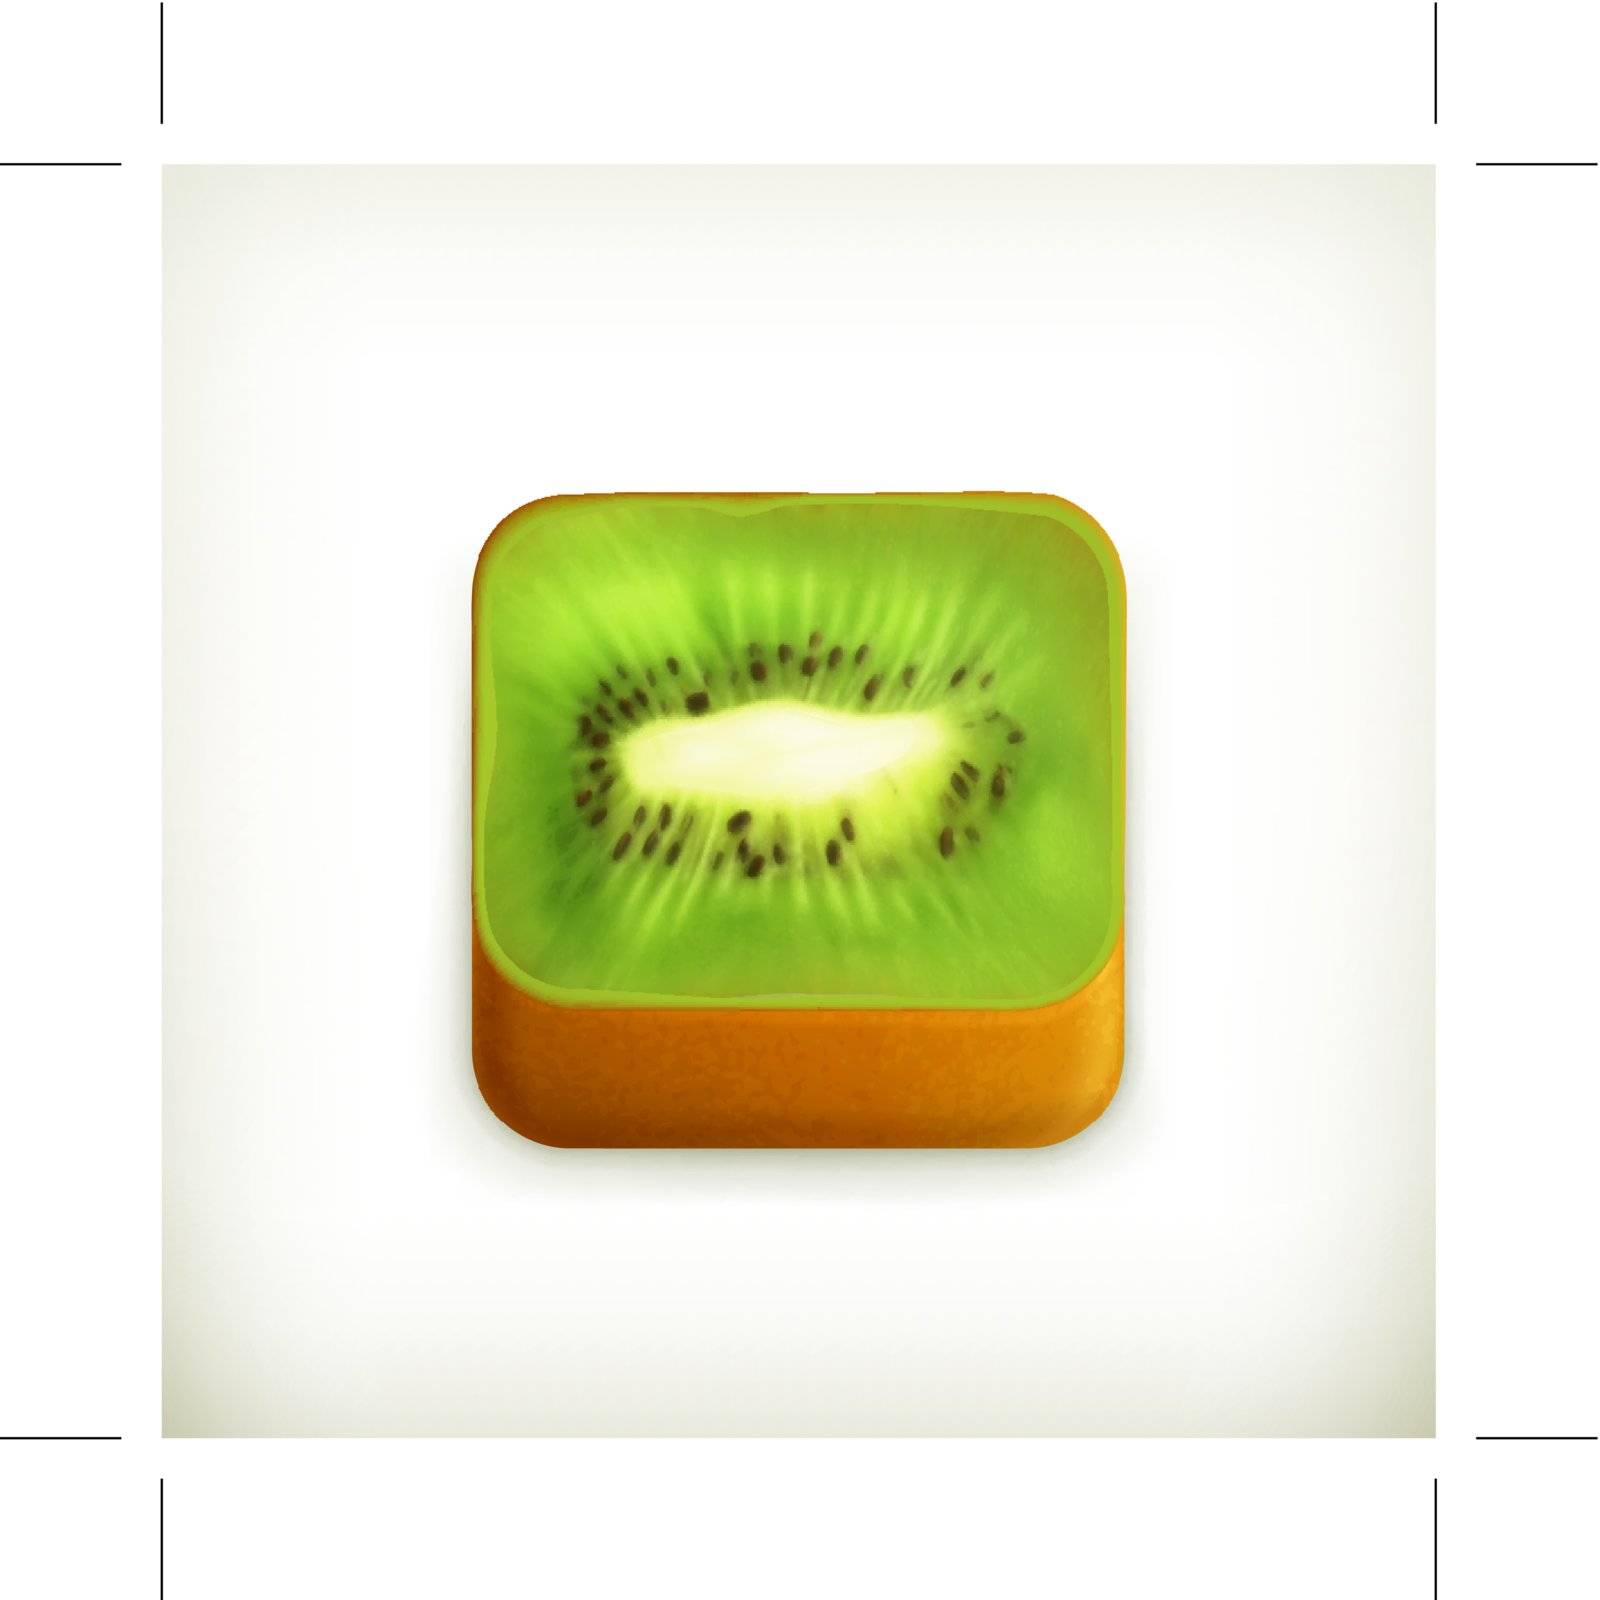 Kiwi app icon, vector